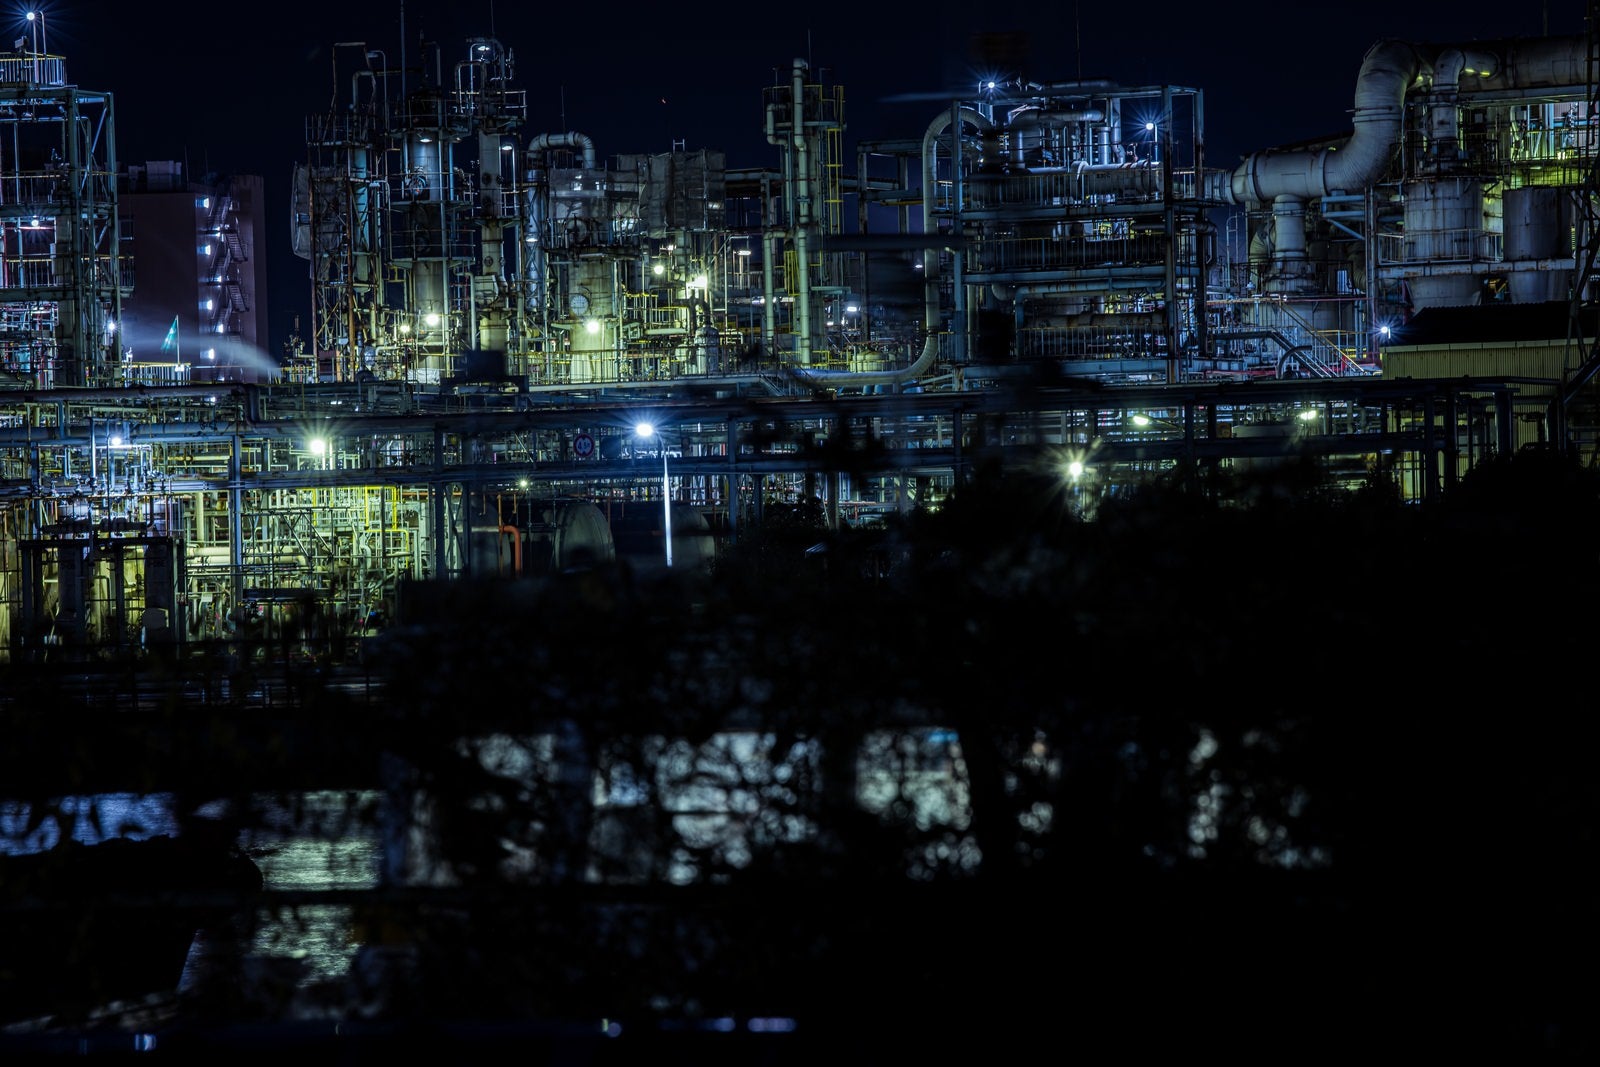 「木々の陰から浮かび上がる工場夜景」の写真